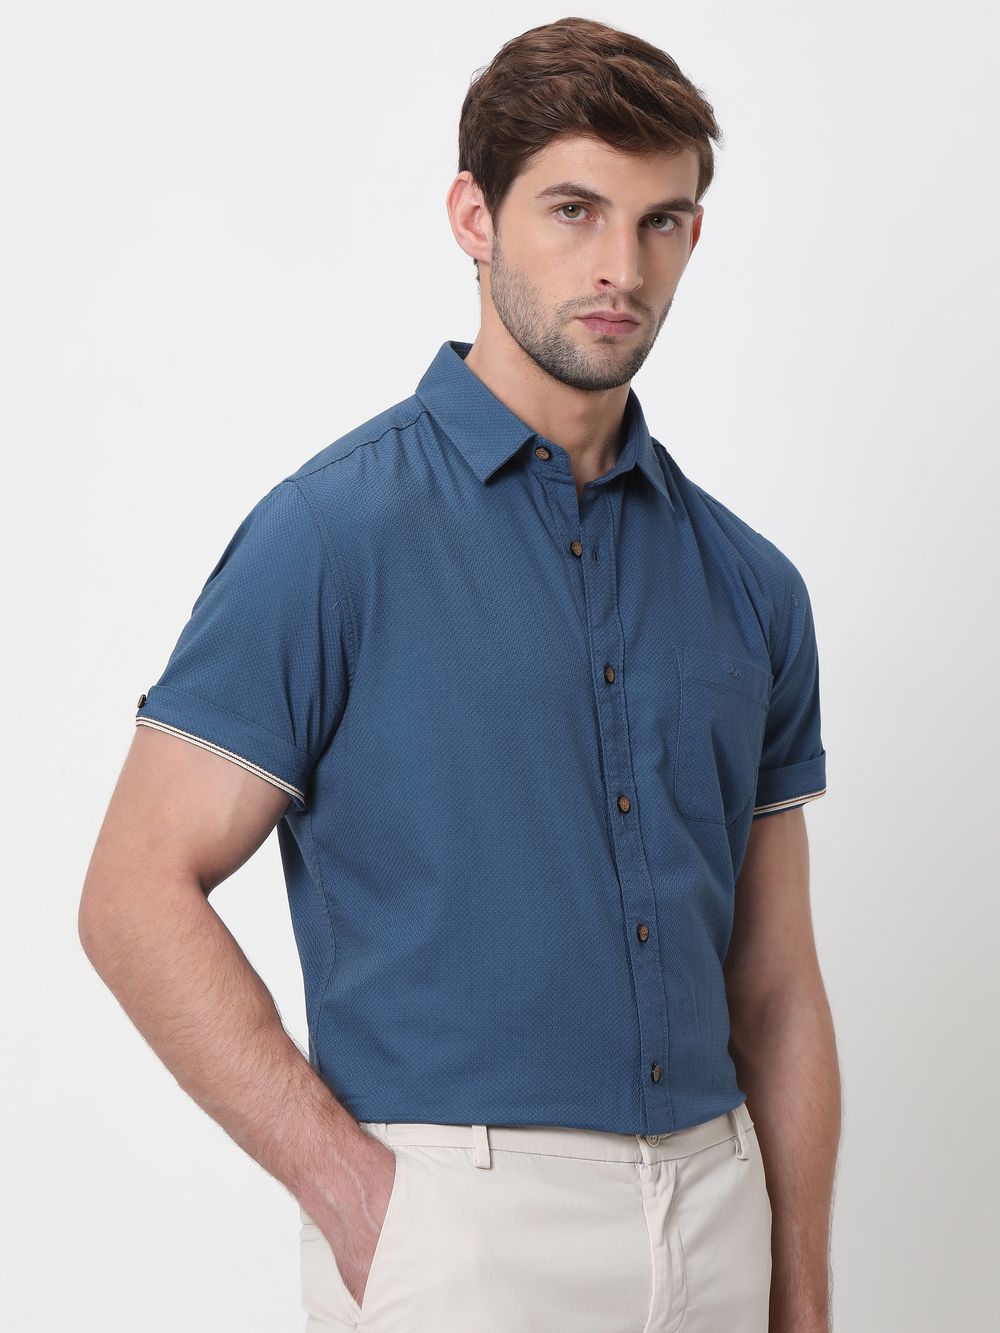 Blue Cotton Plain Shirt